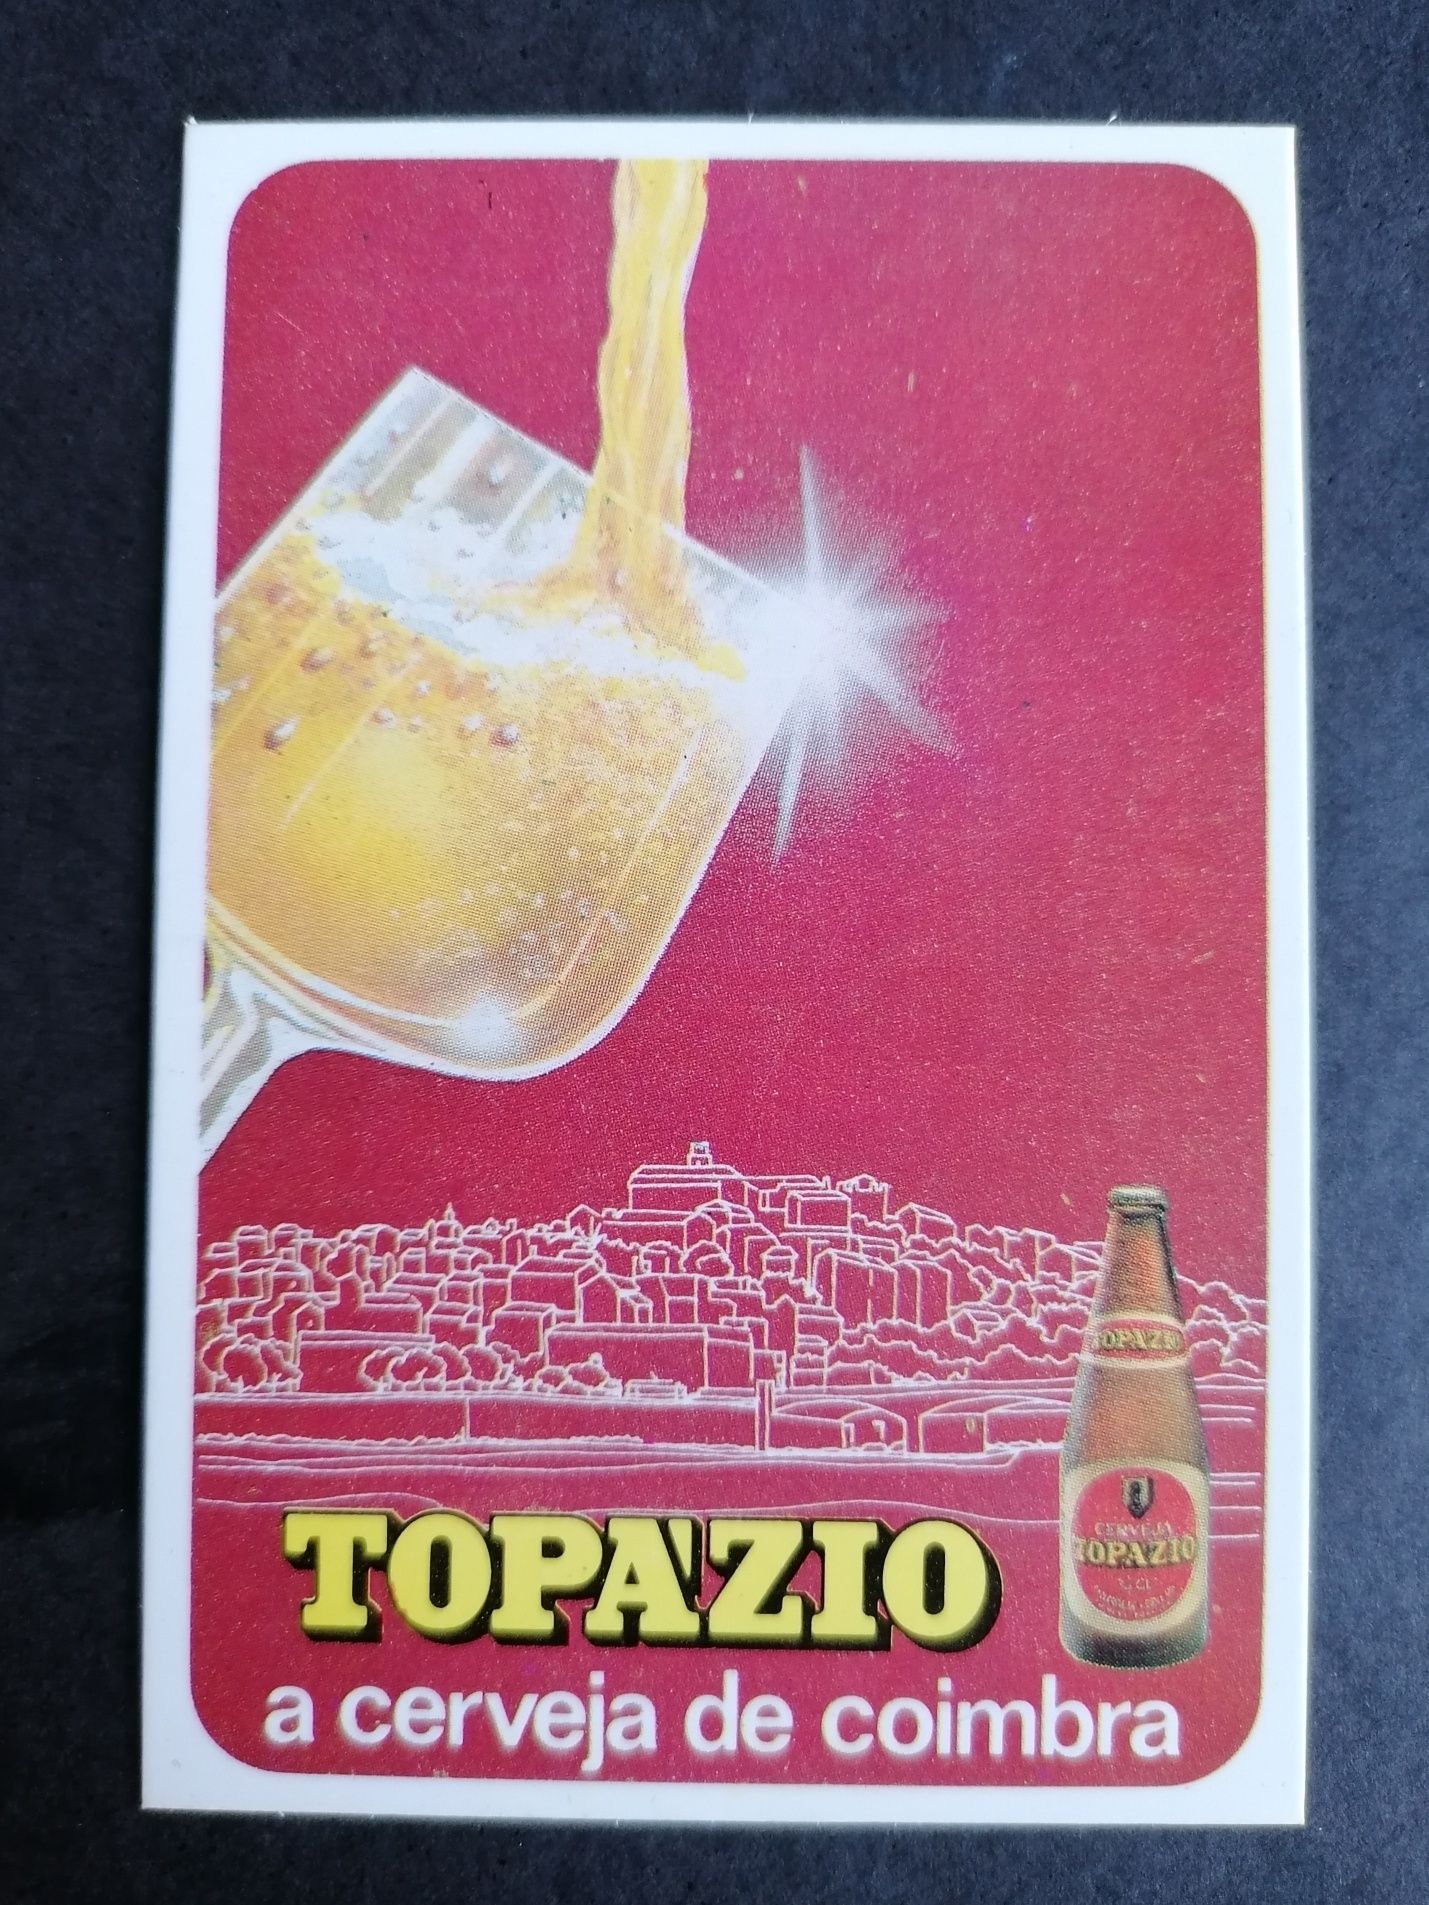 3 Calendários Cerveja Carlsberg, Bohemia, Topázio  1,50